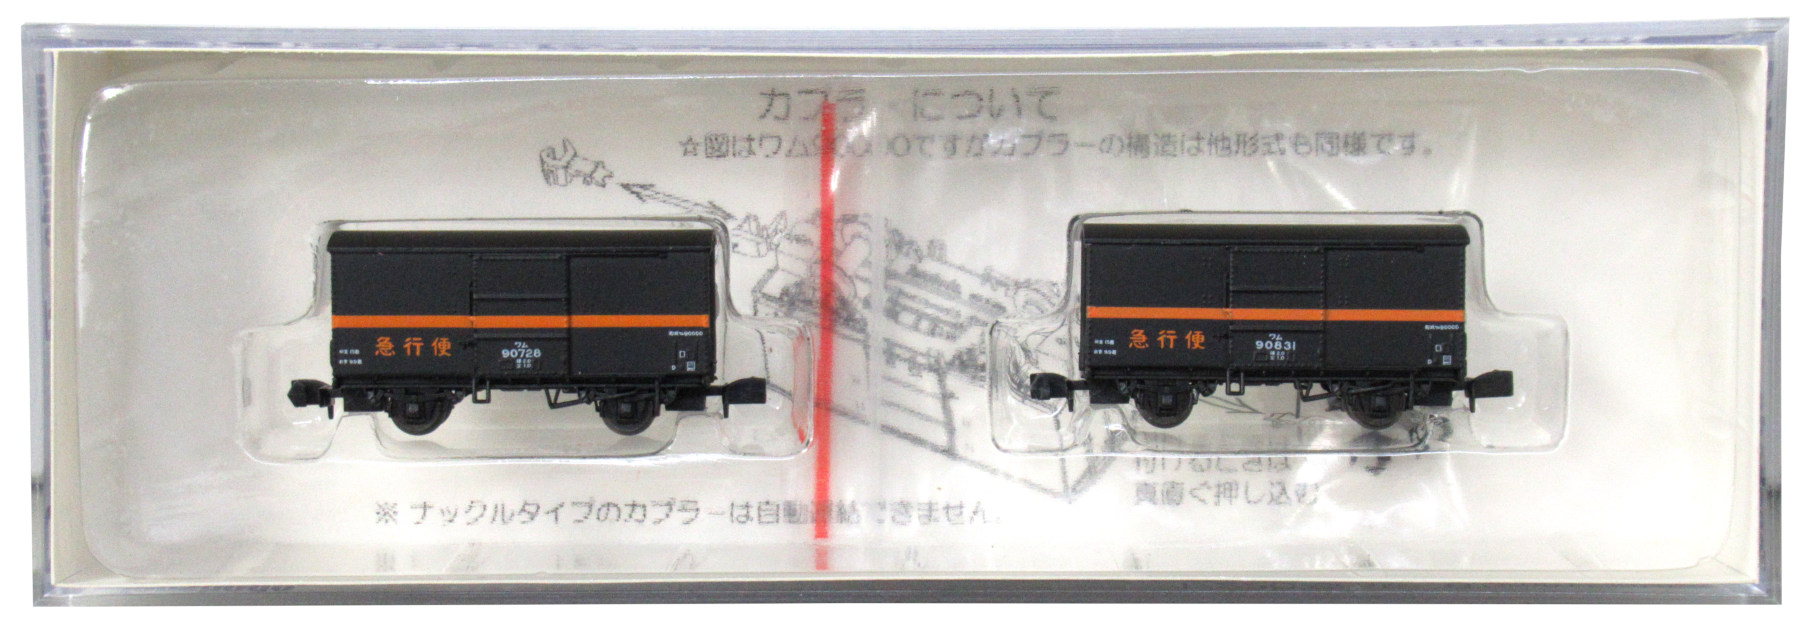 公式]鉄道模型(84013ワム90000急行便 Cセット (ワム90728+ワム90831 